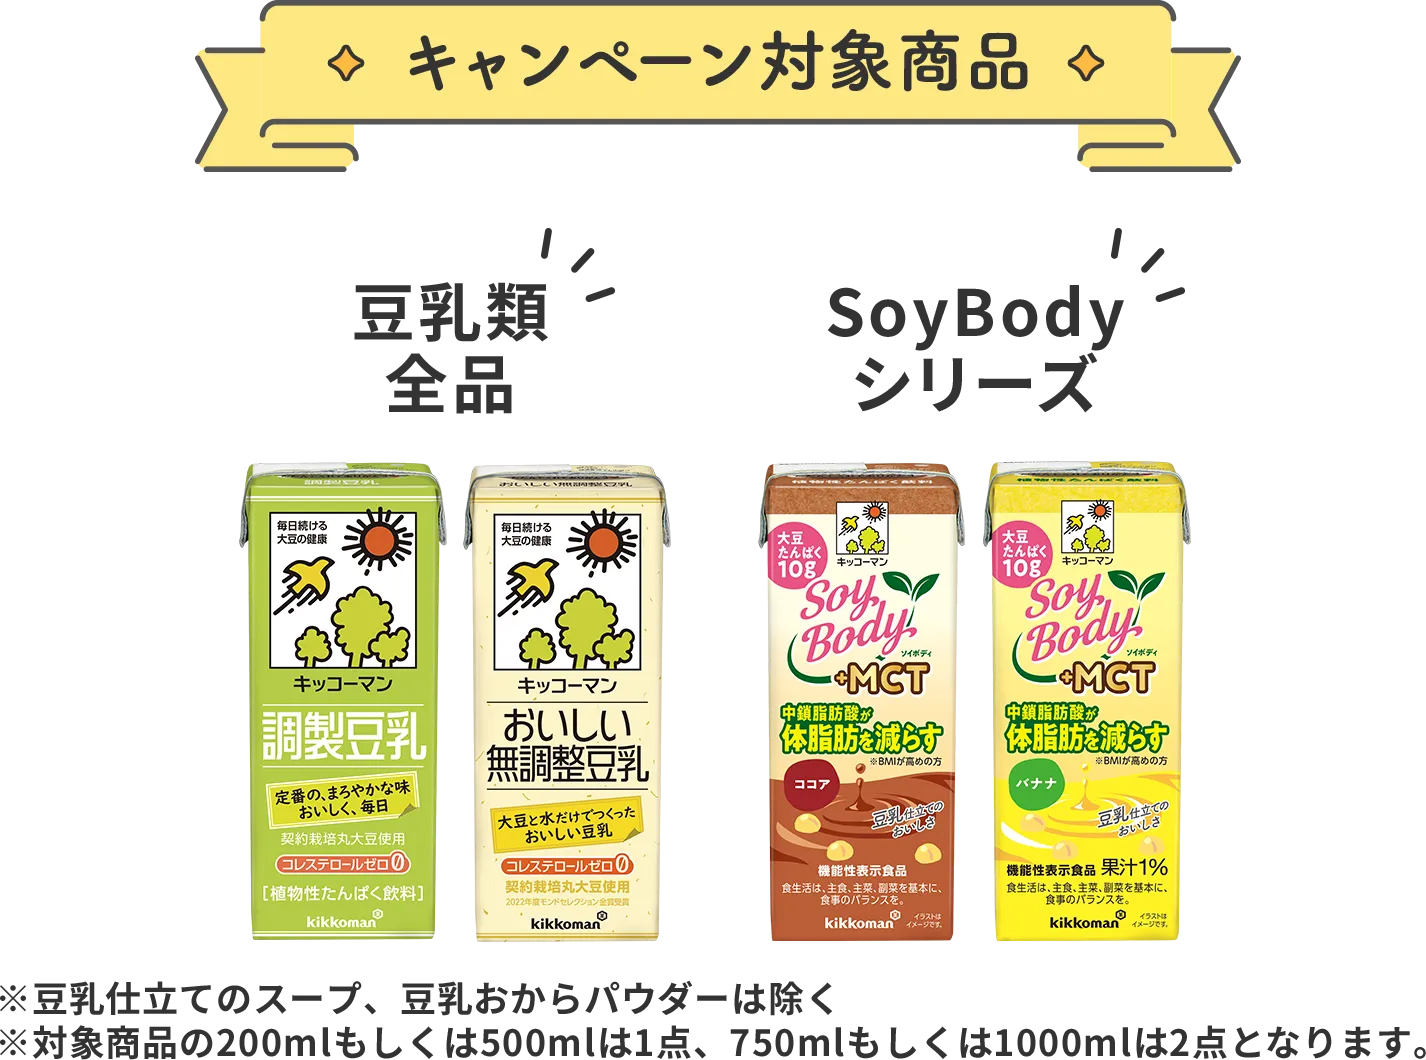 キャンペーン対象商品 豆乳類全品 SoyBodyシリーズ ※豆乳仕立てのスープ、豆乳おからパウダーは除く ※対象商品の200mlもしくは500mlは1点、 　750mlもしくは1Lは2点となります。